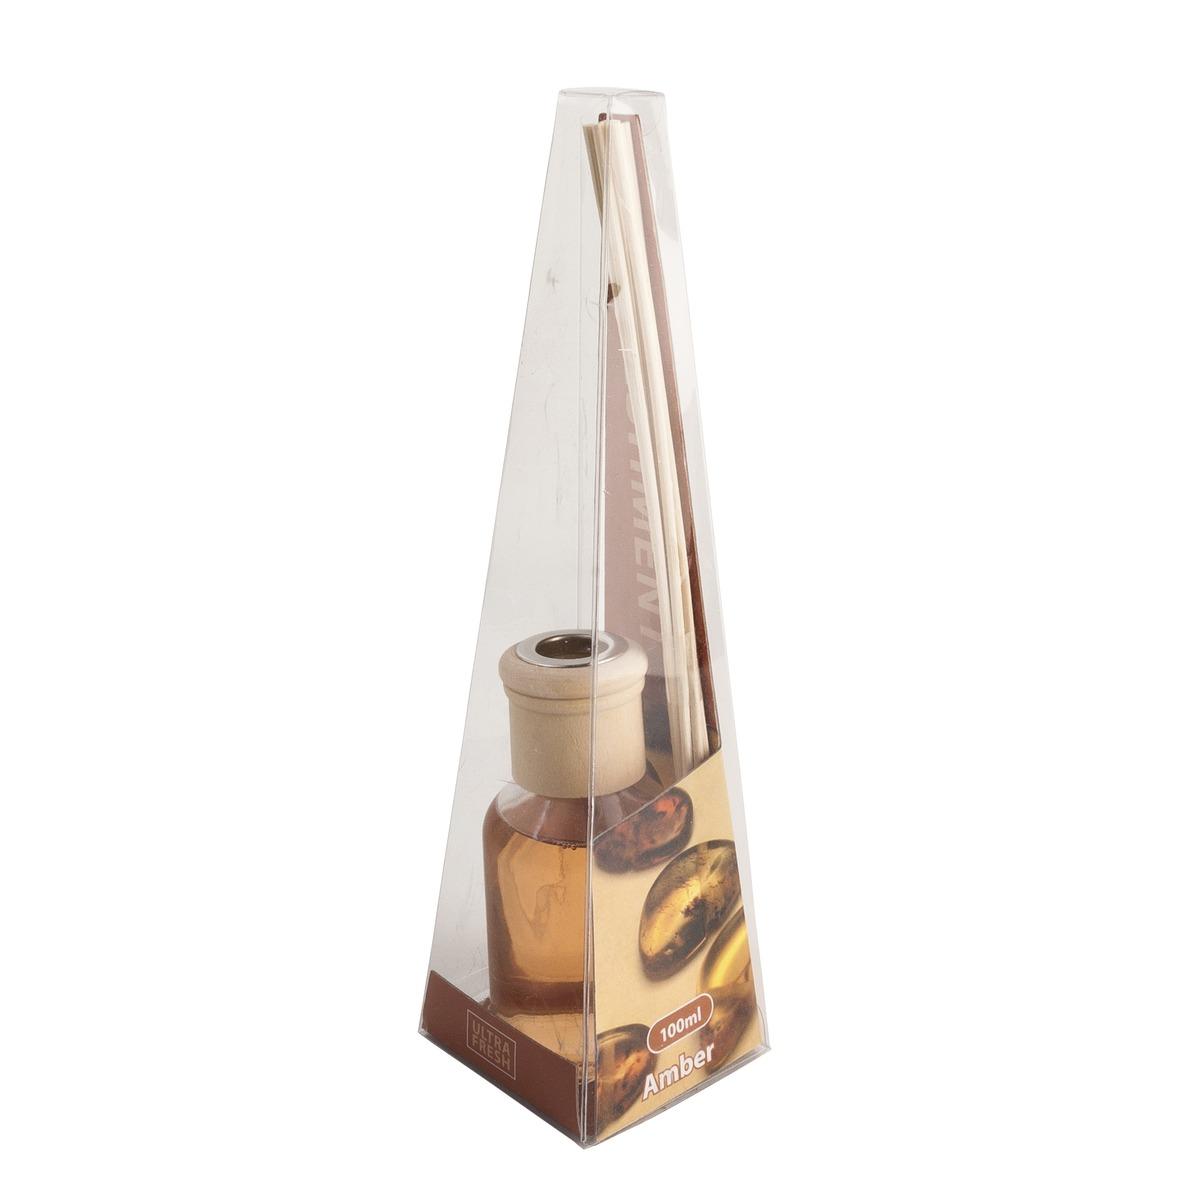 Diffuseur de parfum avec flacon, bouchon et bâtonnets senteur délicate Ambre - 100 ml